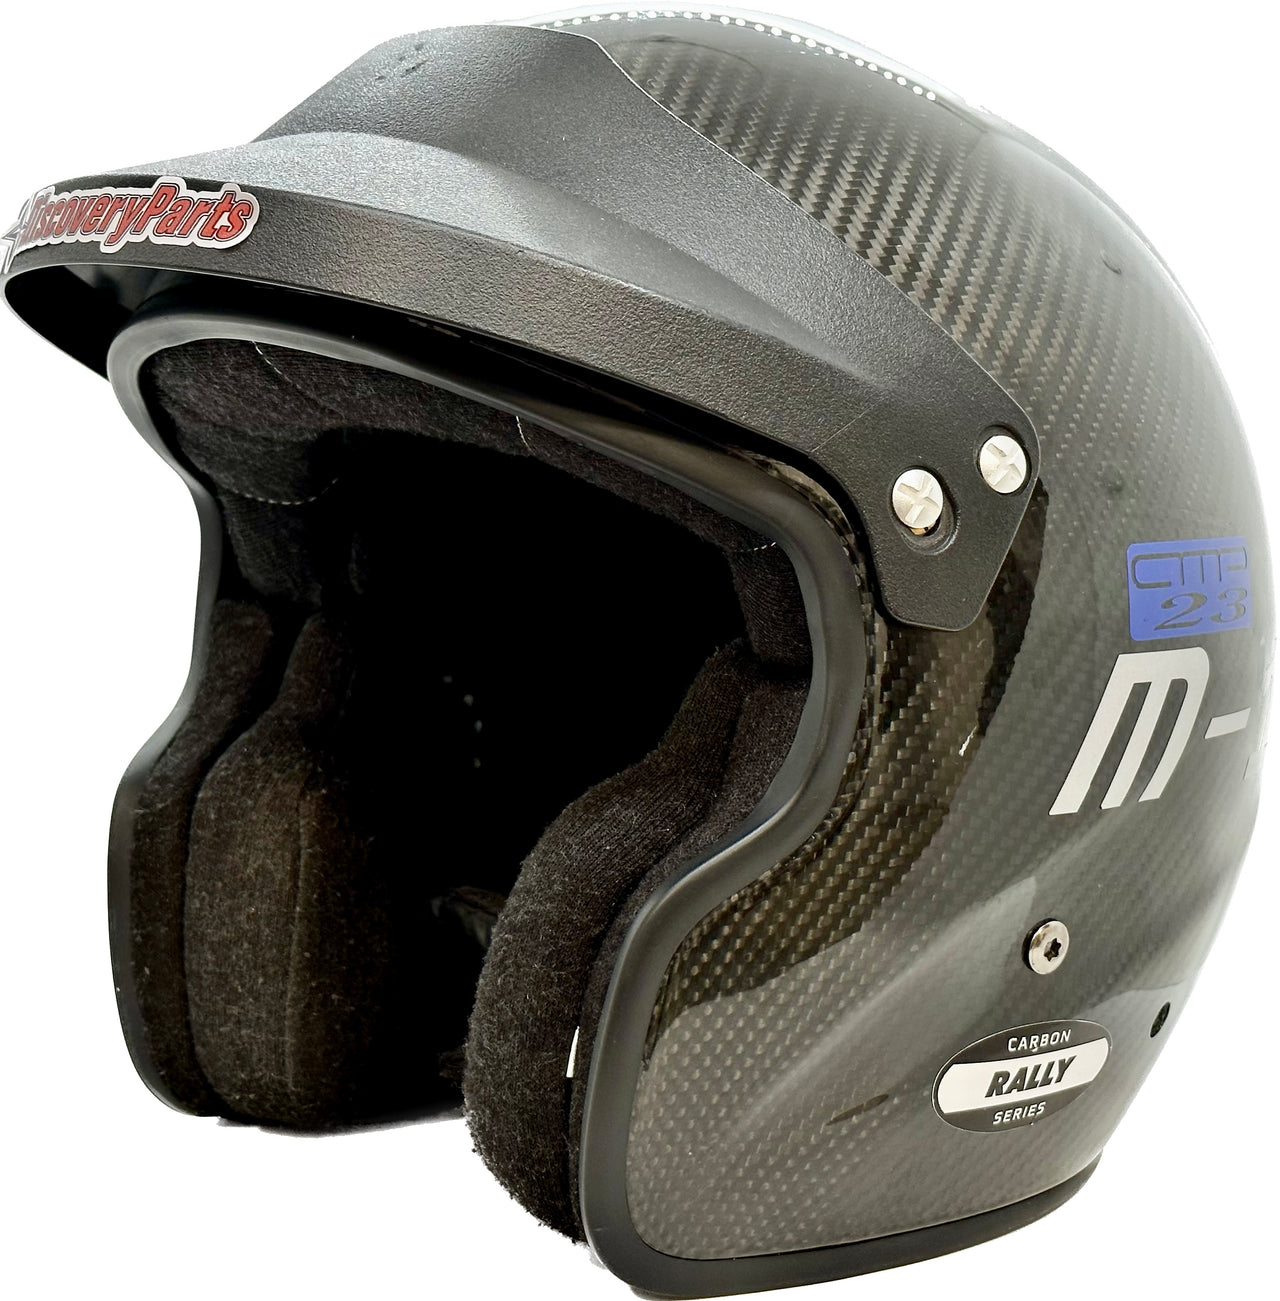 Rental of SA2015/SA2020 Helmet Shipped to You